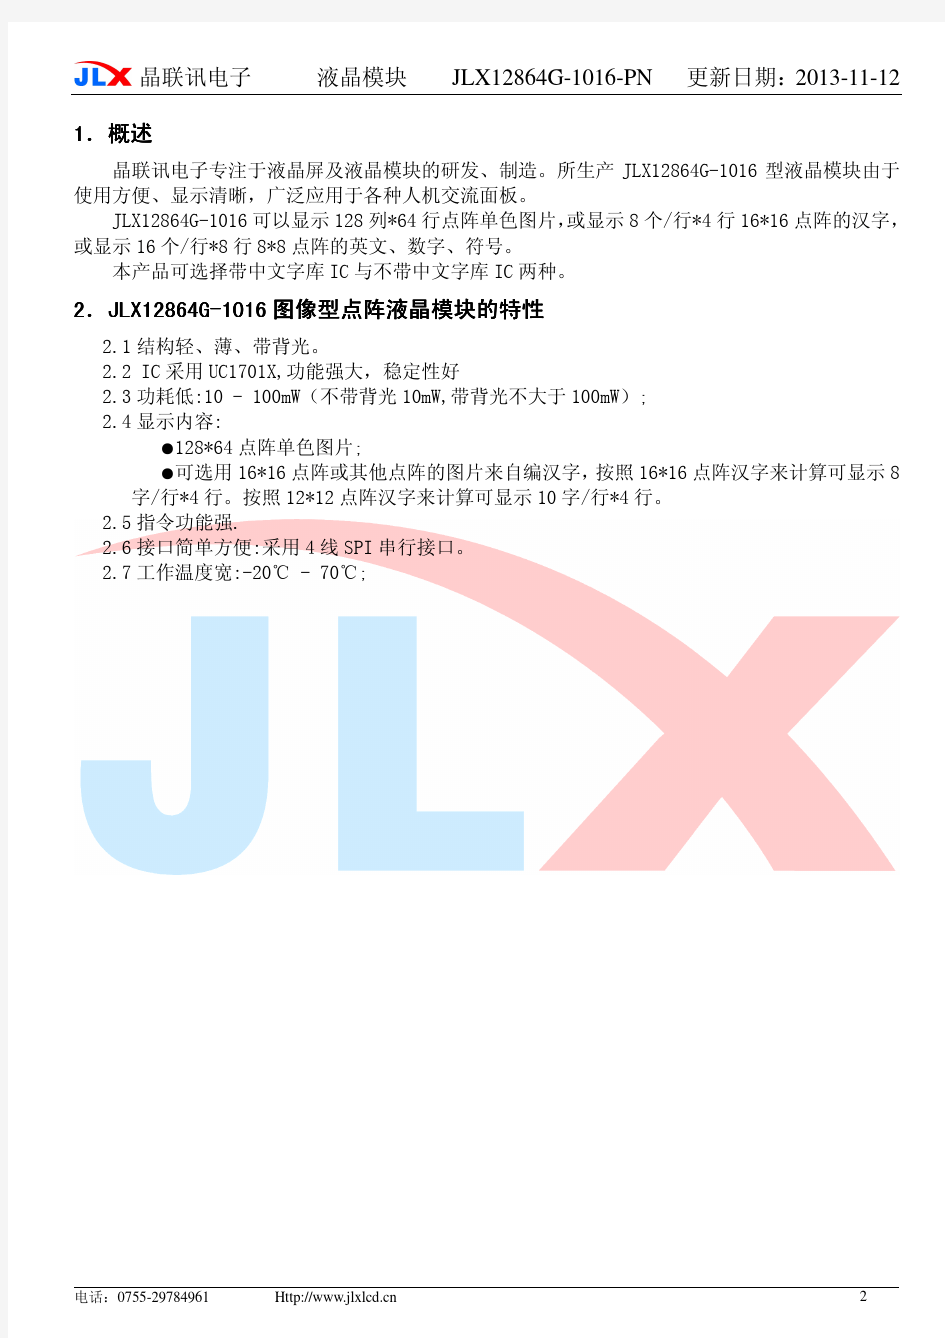 JLX12864G-1016-PN中文说明书